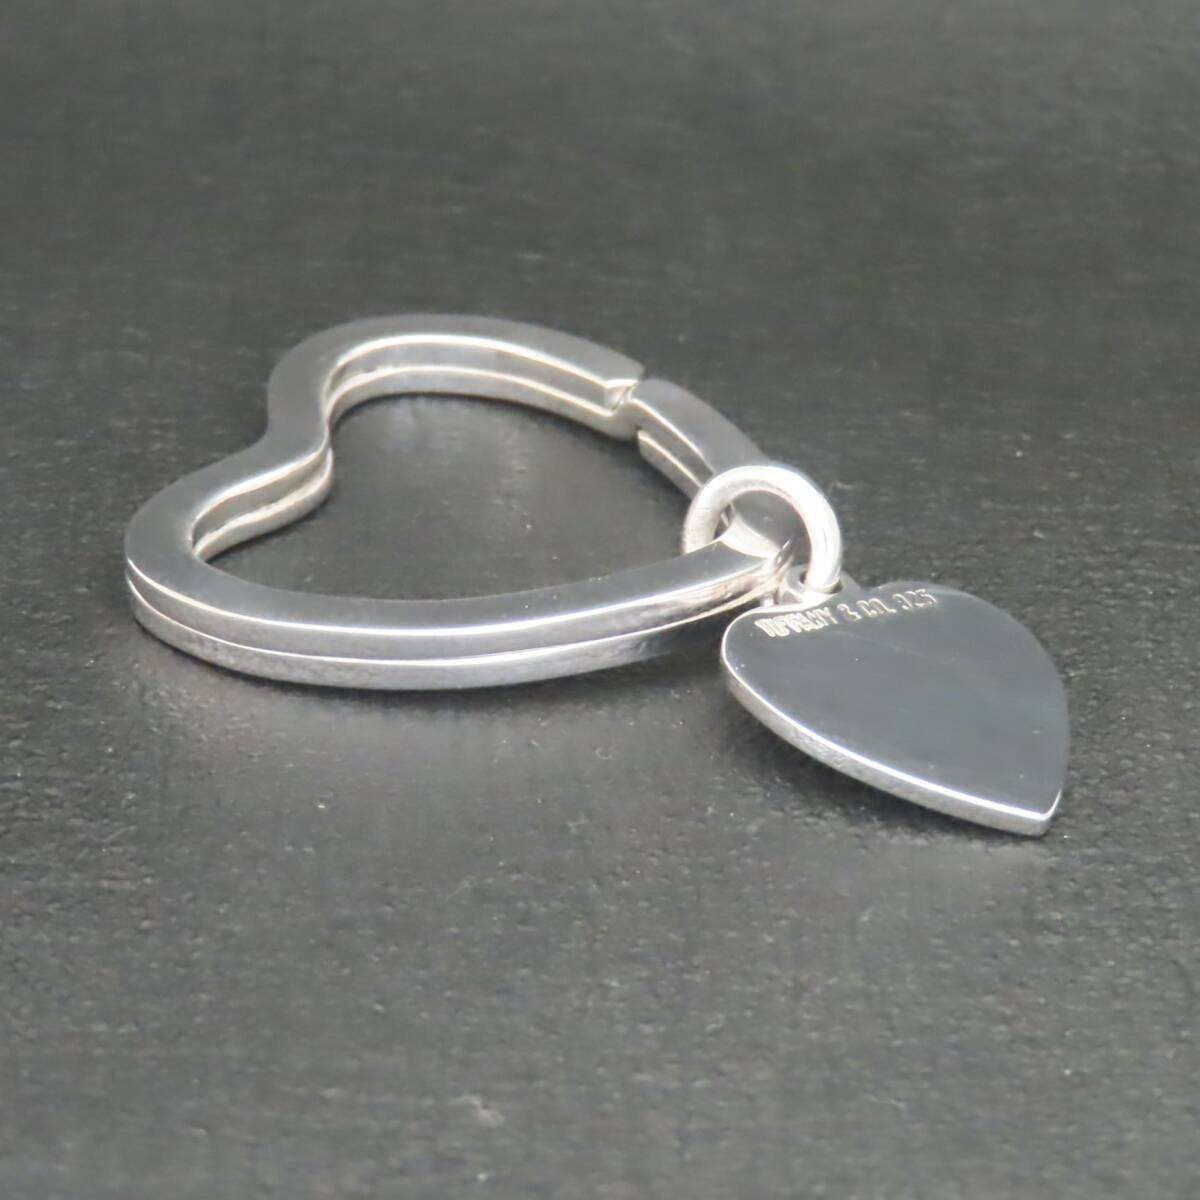  как новый прекрасный товар TIFFANY&Co. Tiffany Heart кольцо для ключей брелок для ключа очарование бирка серебряный 925 7.6g